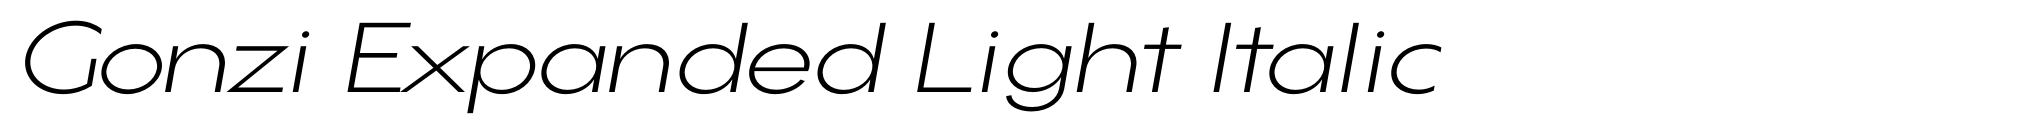 Gonzi Expanded Light Italic image